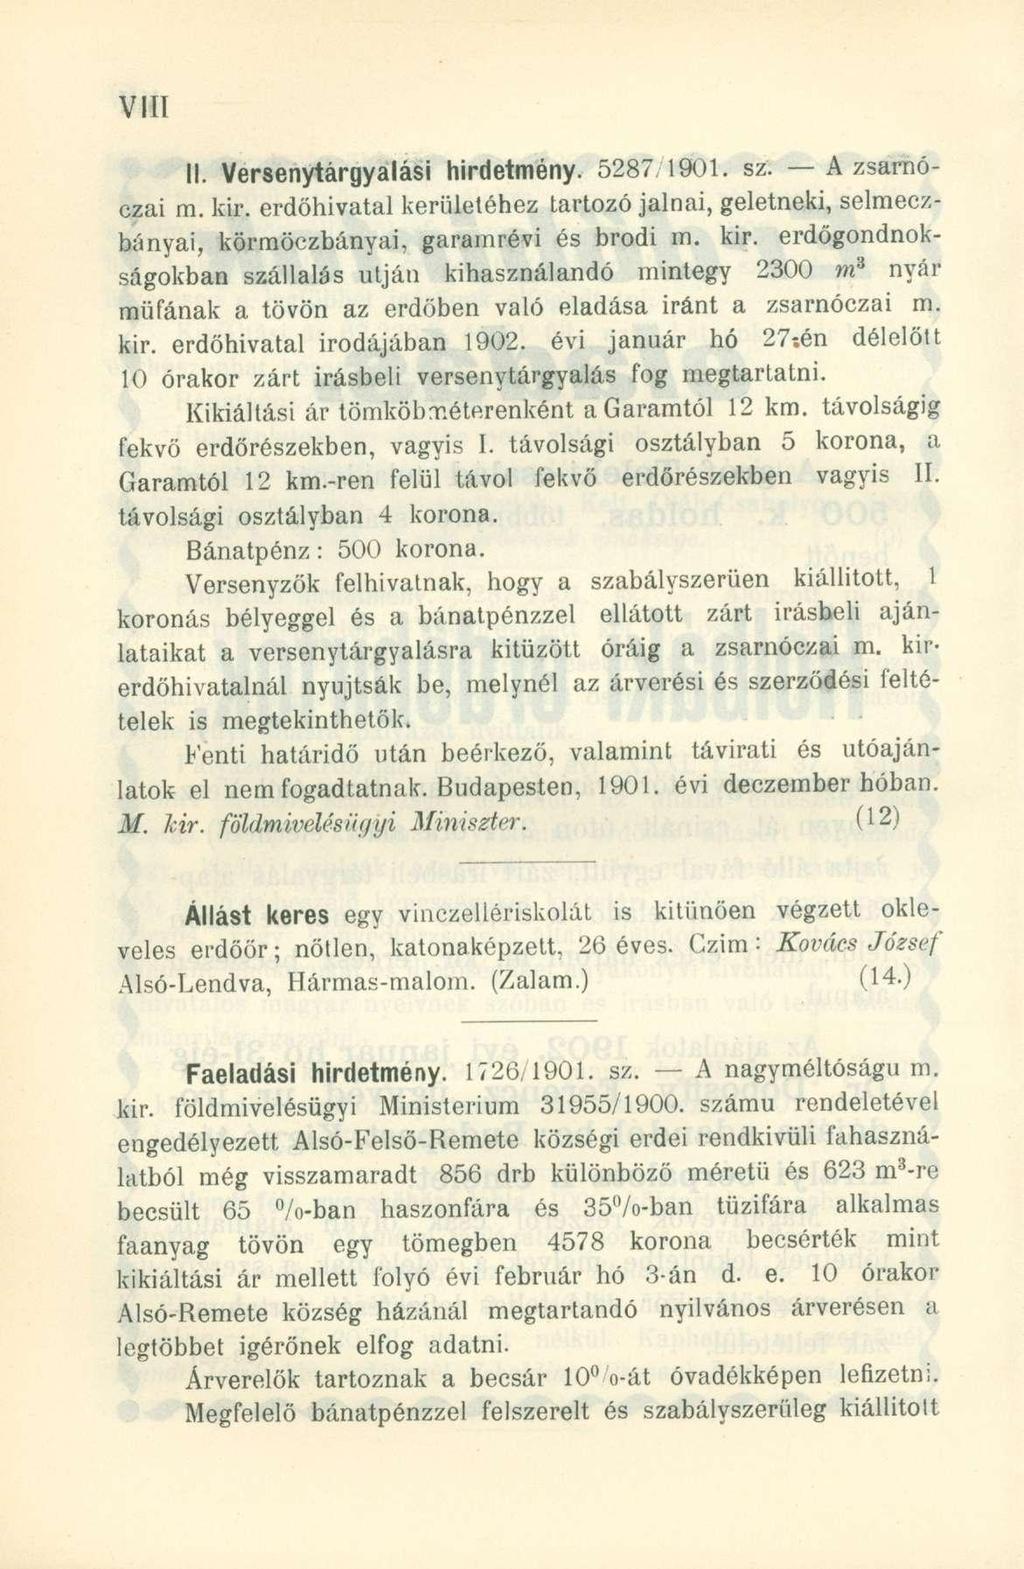 II. Versenytárgyalási hirdetmény. 5287 1901. sz. A zsarnóczai m. kir.